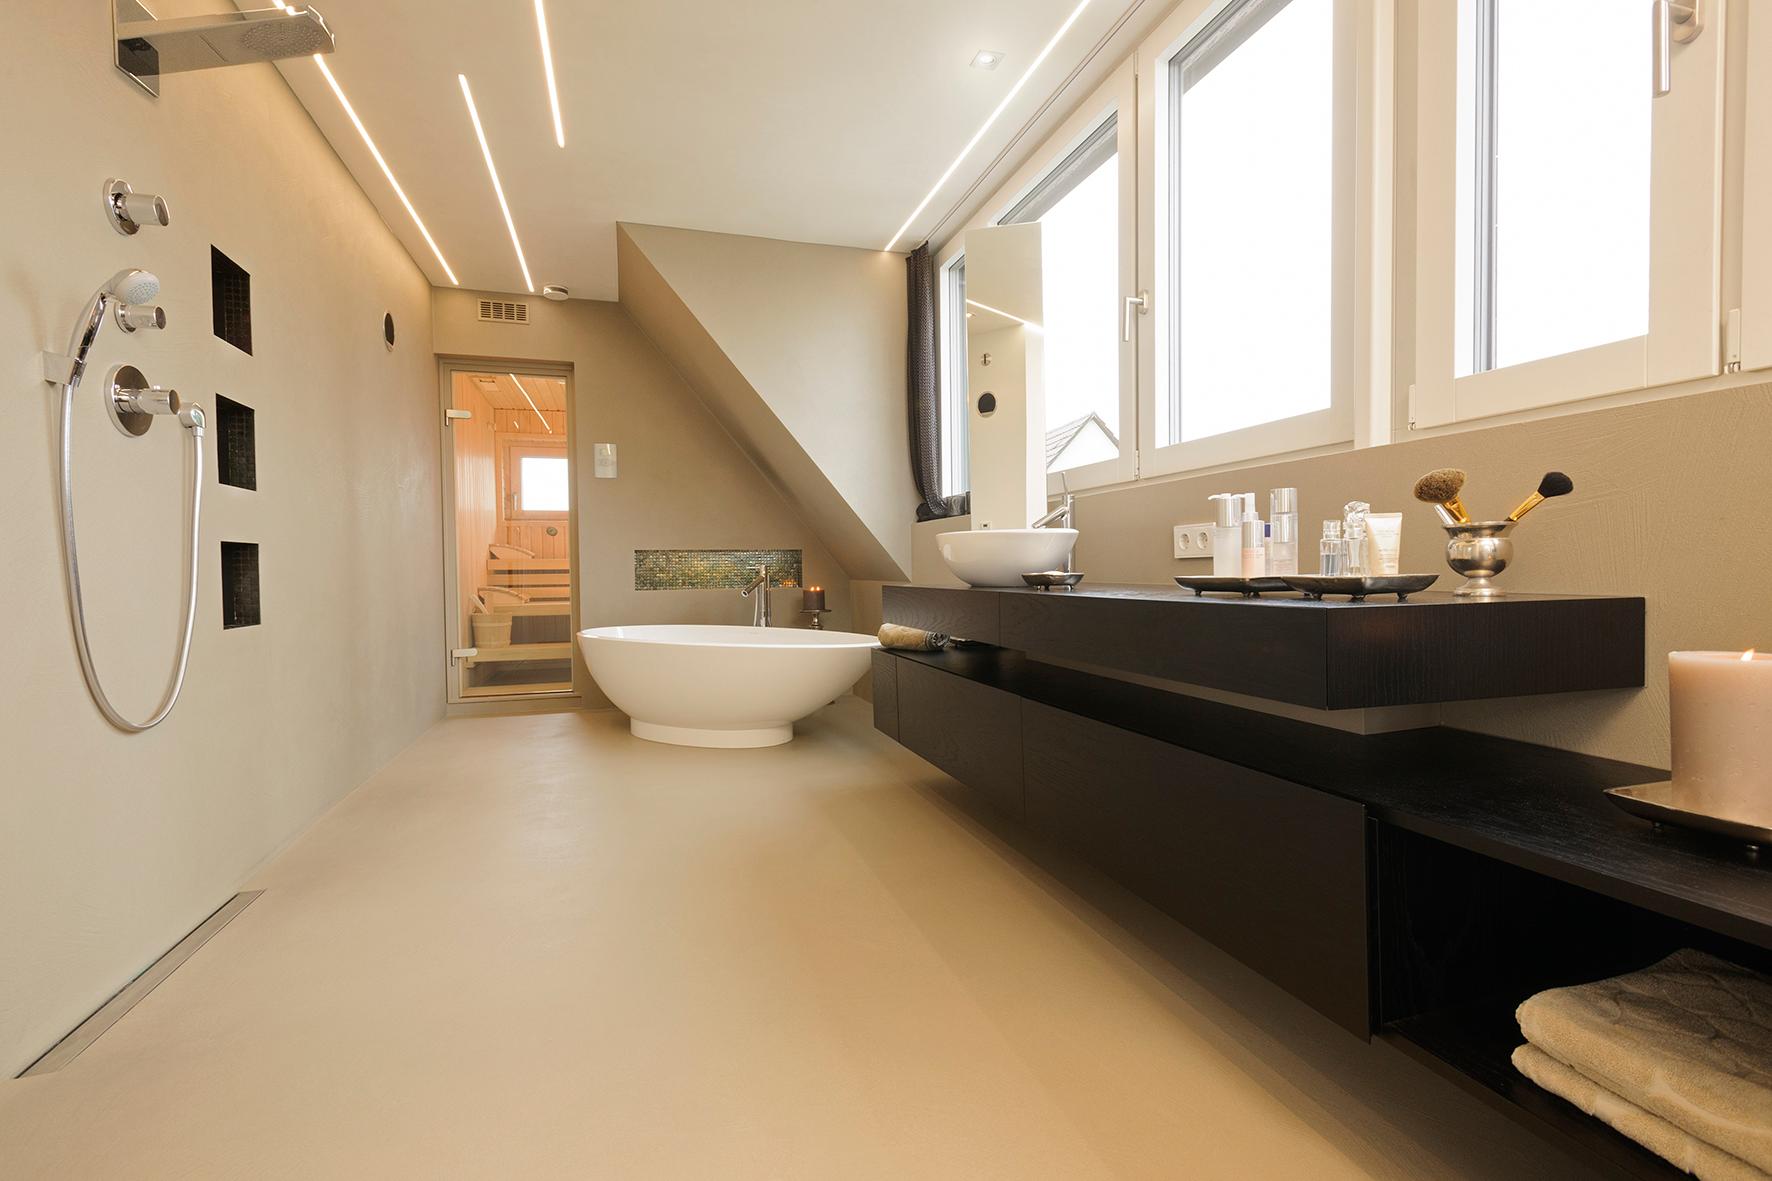 Badezimmer mit Sauna #badewanne #offenedusche #sauna ©Spaett Architekten